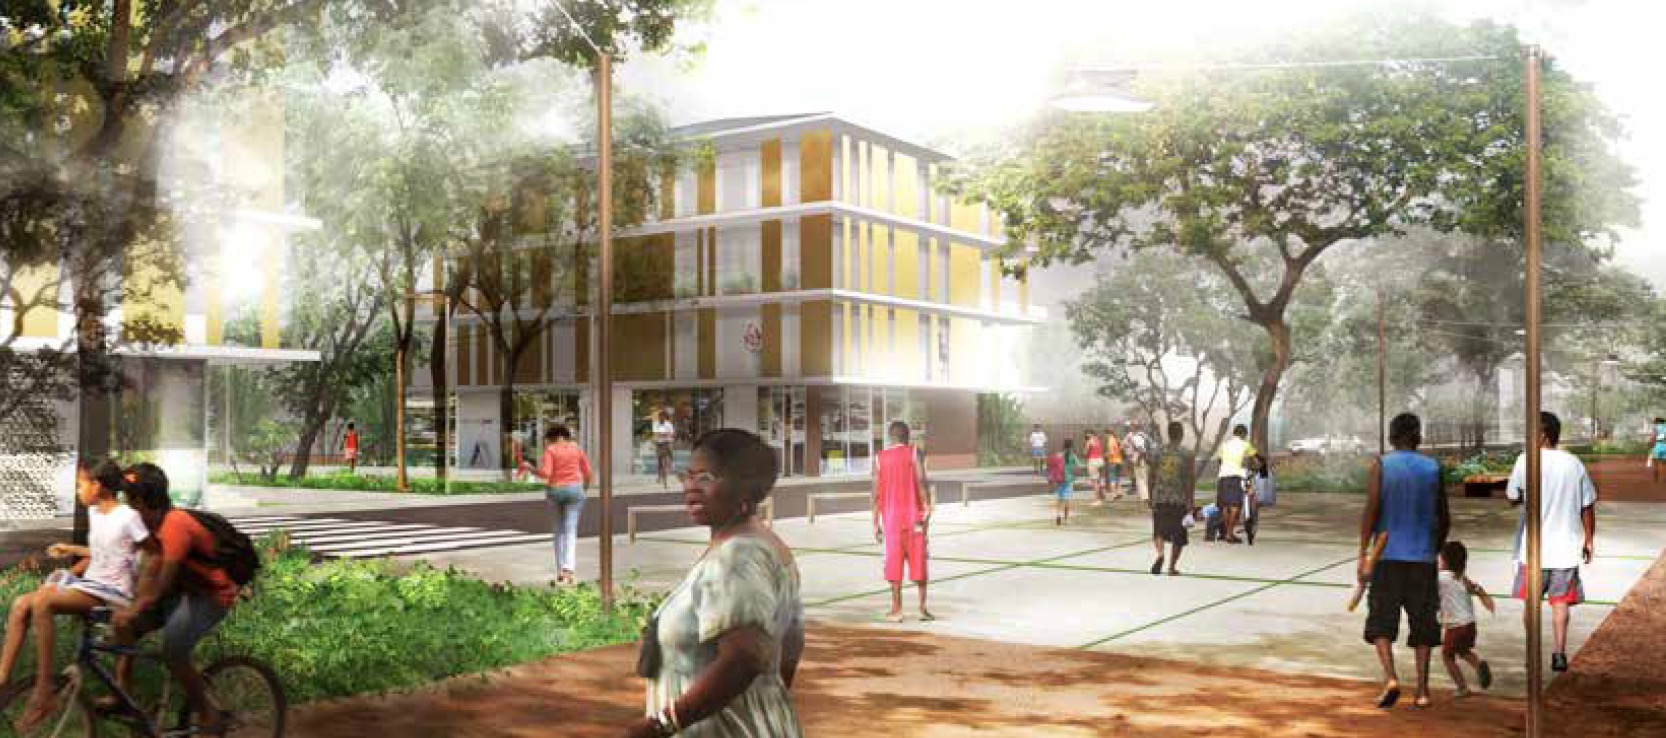 DOSSIER Immobilier : le premier écoquartier de Guyane